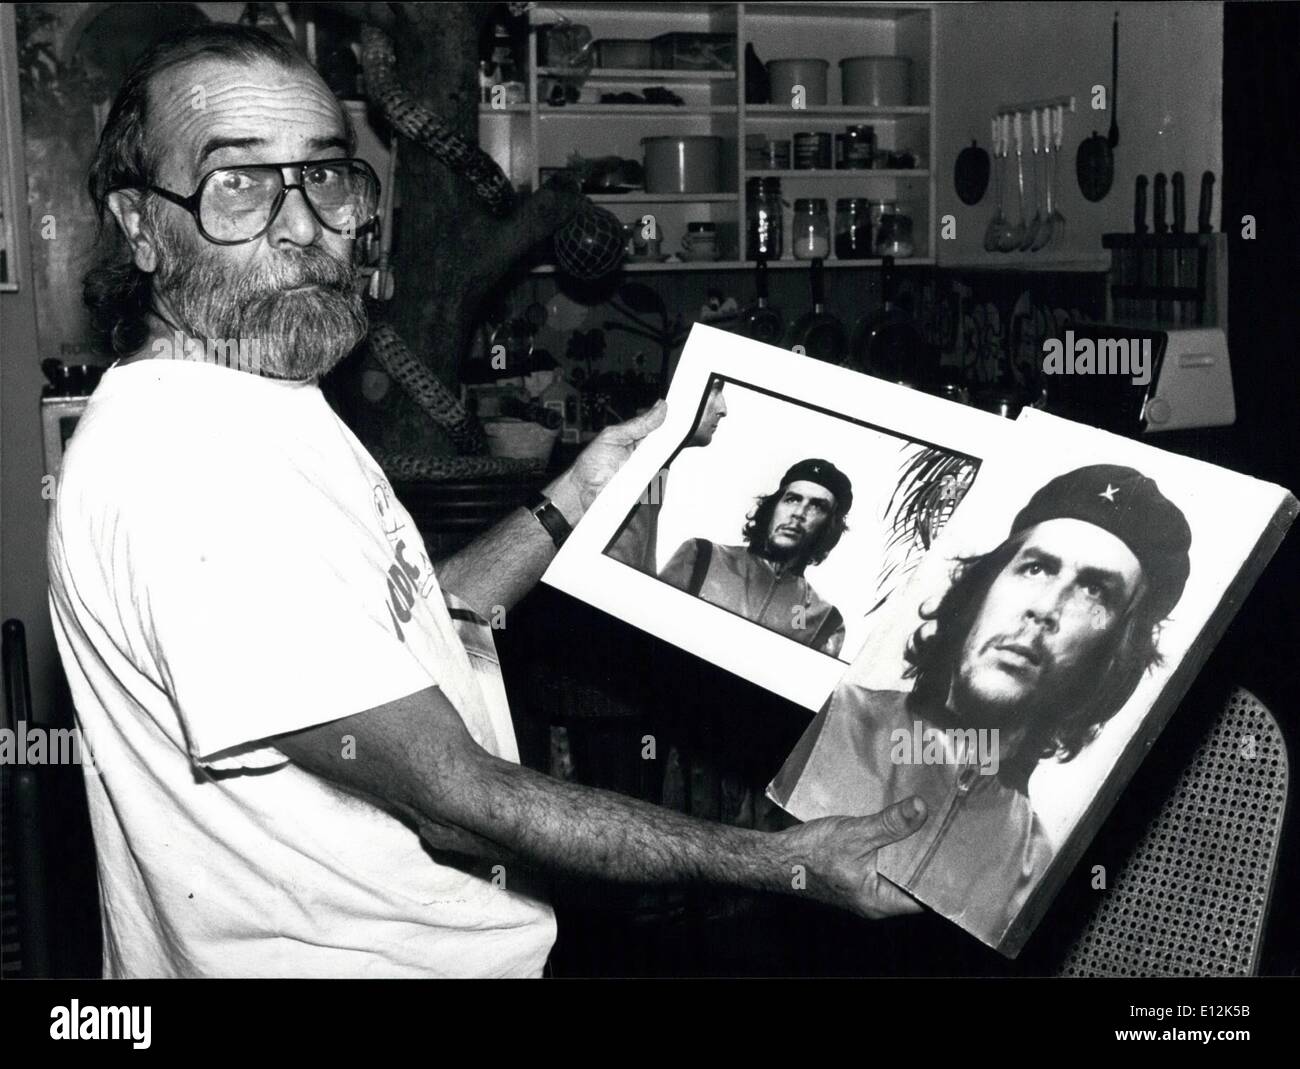 El 24 de febrero, 2012 - Che: El retrato y su fotógrafo. El 6 de marzo de 1960, Alberto Korda, un joven fotógrafo cubano, disparó una imagen que en el ínterin se ha hecho famosa en todo el mundo, el retrato del Che Guevara. Él consiguió el revolucionario en su película mientras toma fotografías durante el día de sus exequias por las víctimas de un accidente en La Habana. Albert Korba muestra el original y el retrato de la foto que hizo su manera alrededor del mundo. 23/01/89 Foto de stock